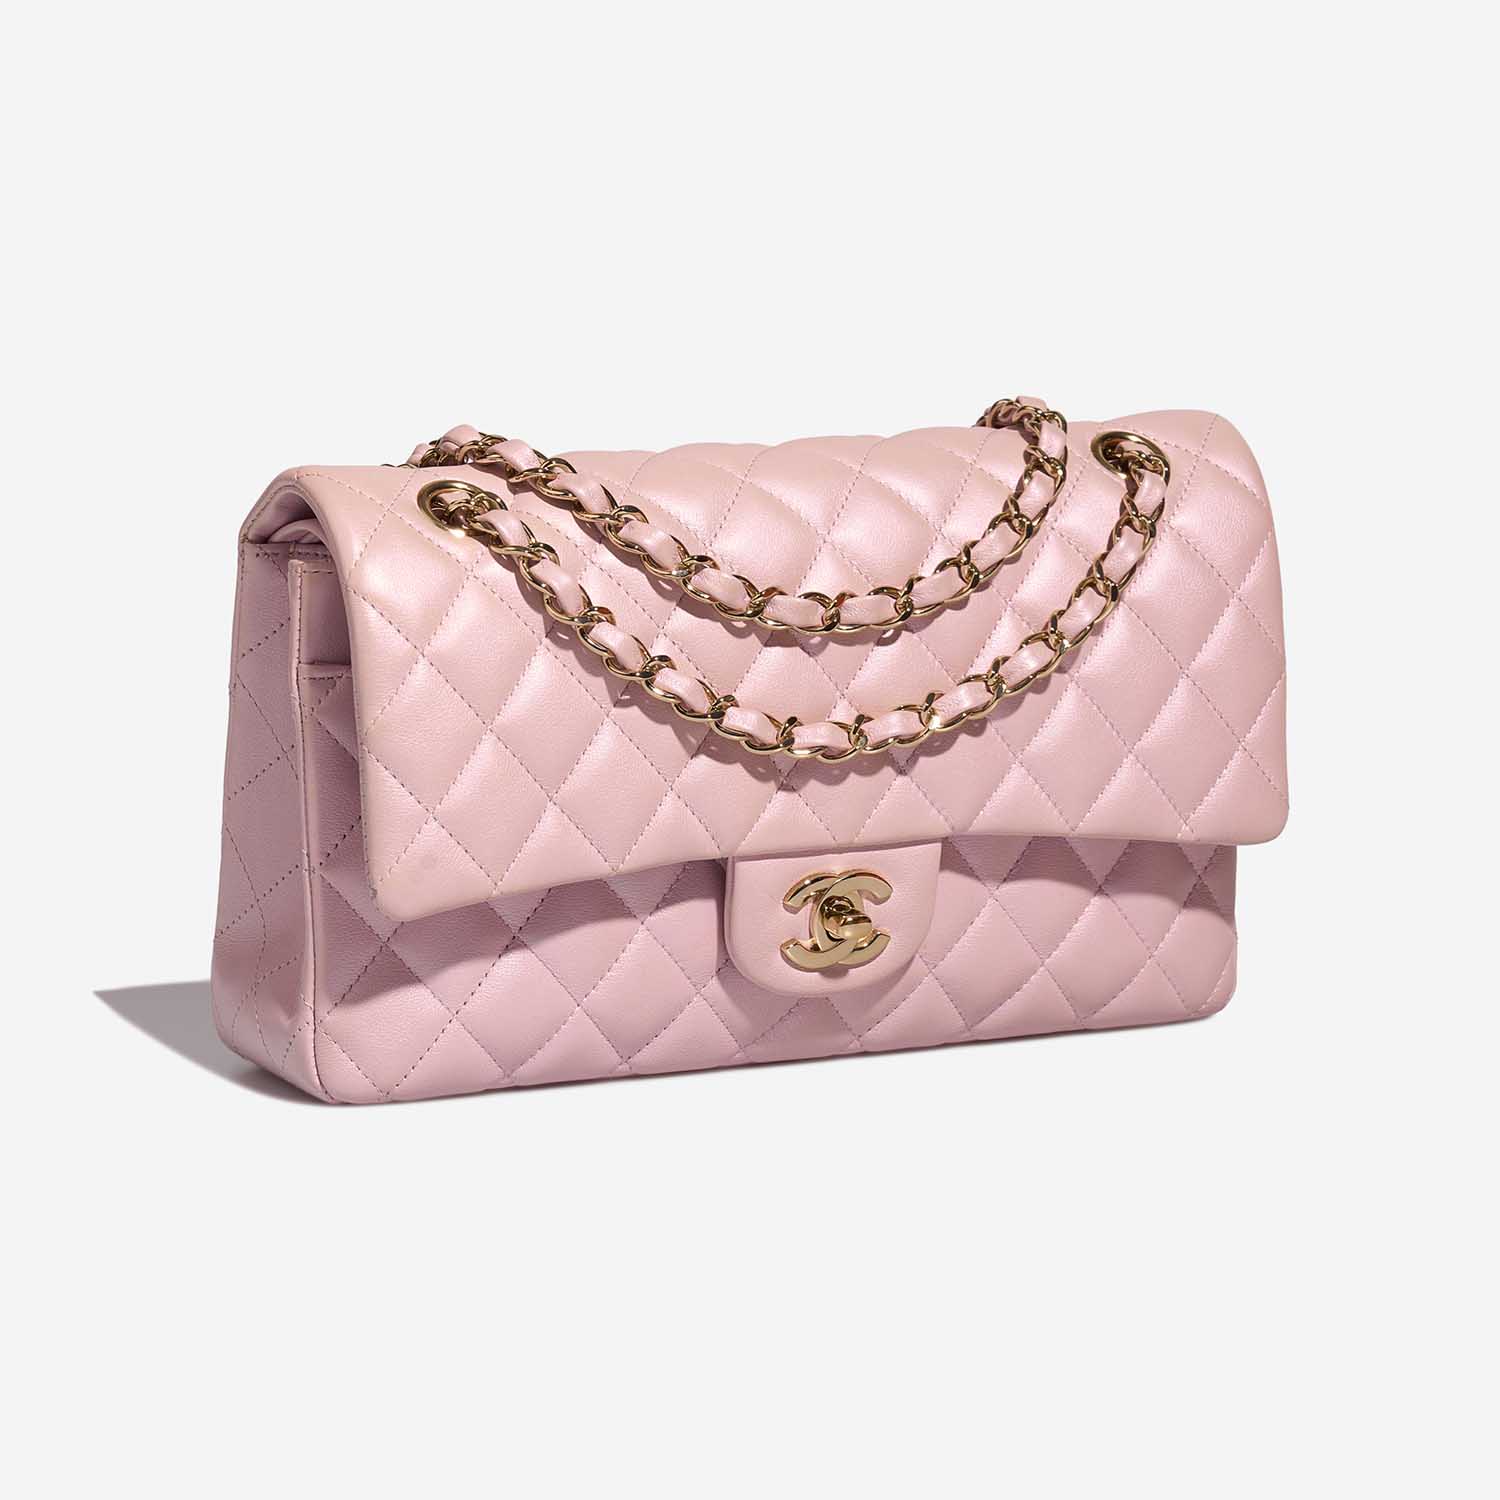 Chanel Timeless Medium LightPink Side Front | Verkaufen Sie Ihre Designer-Tasche auf Saclab.com